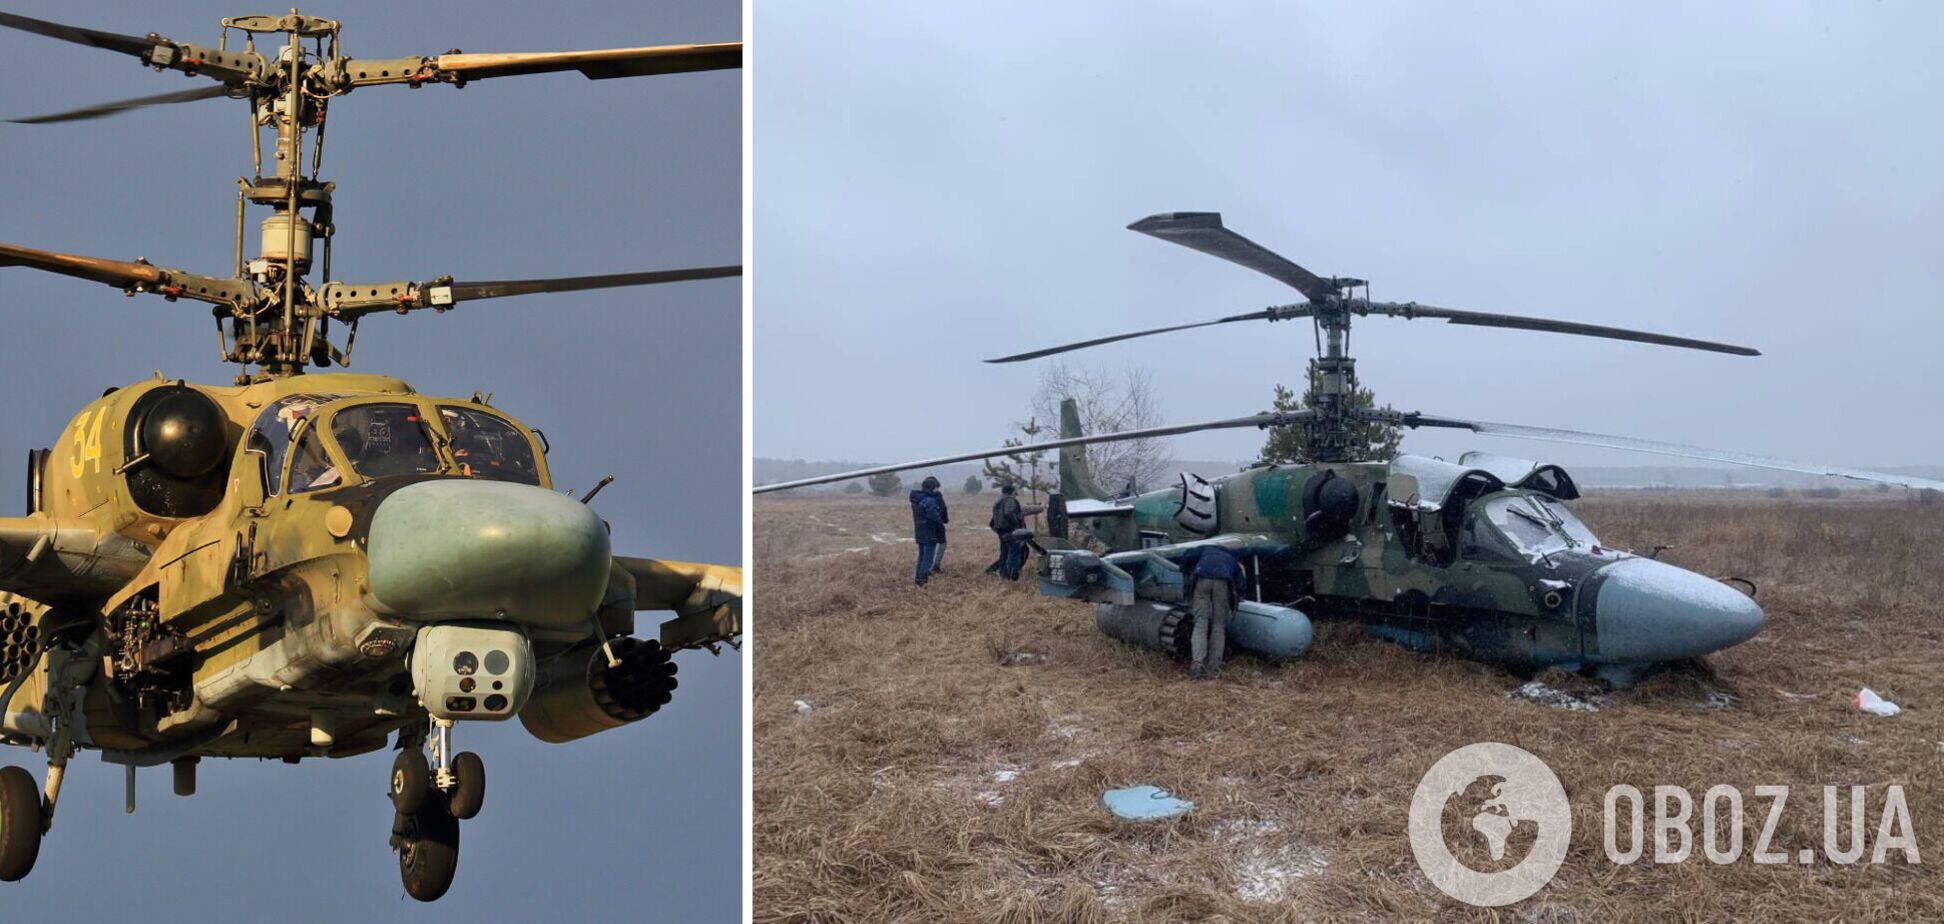 Украинские бойцы сбили второй за сутки вражеский вертолет: Ка-52, давай до свидания